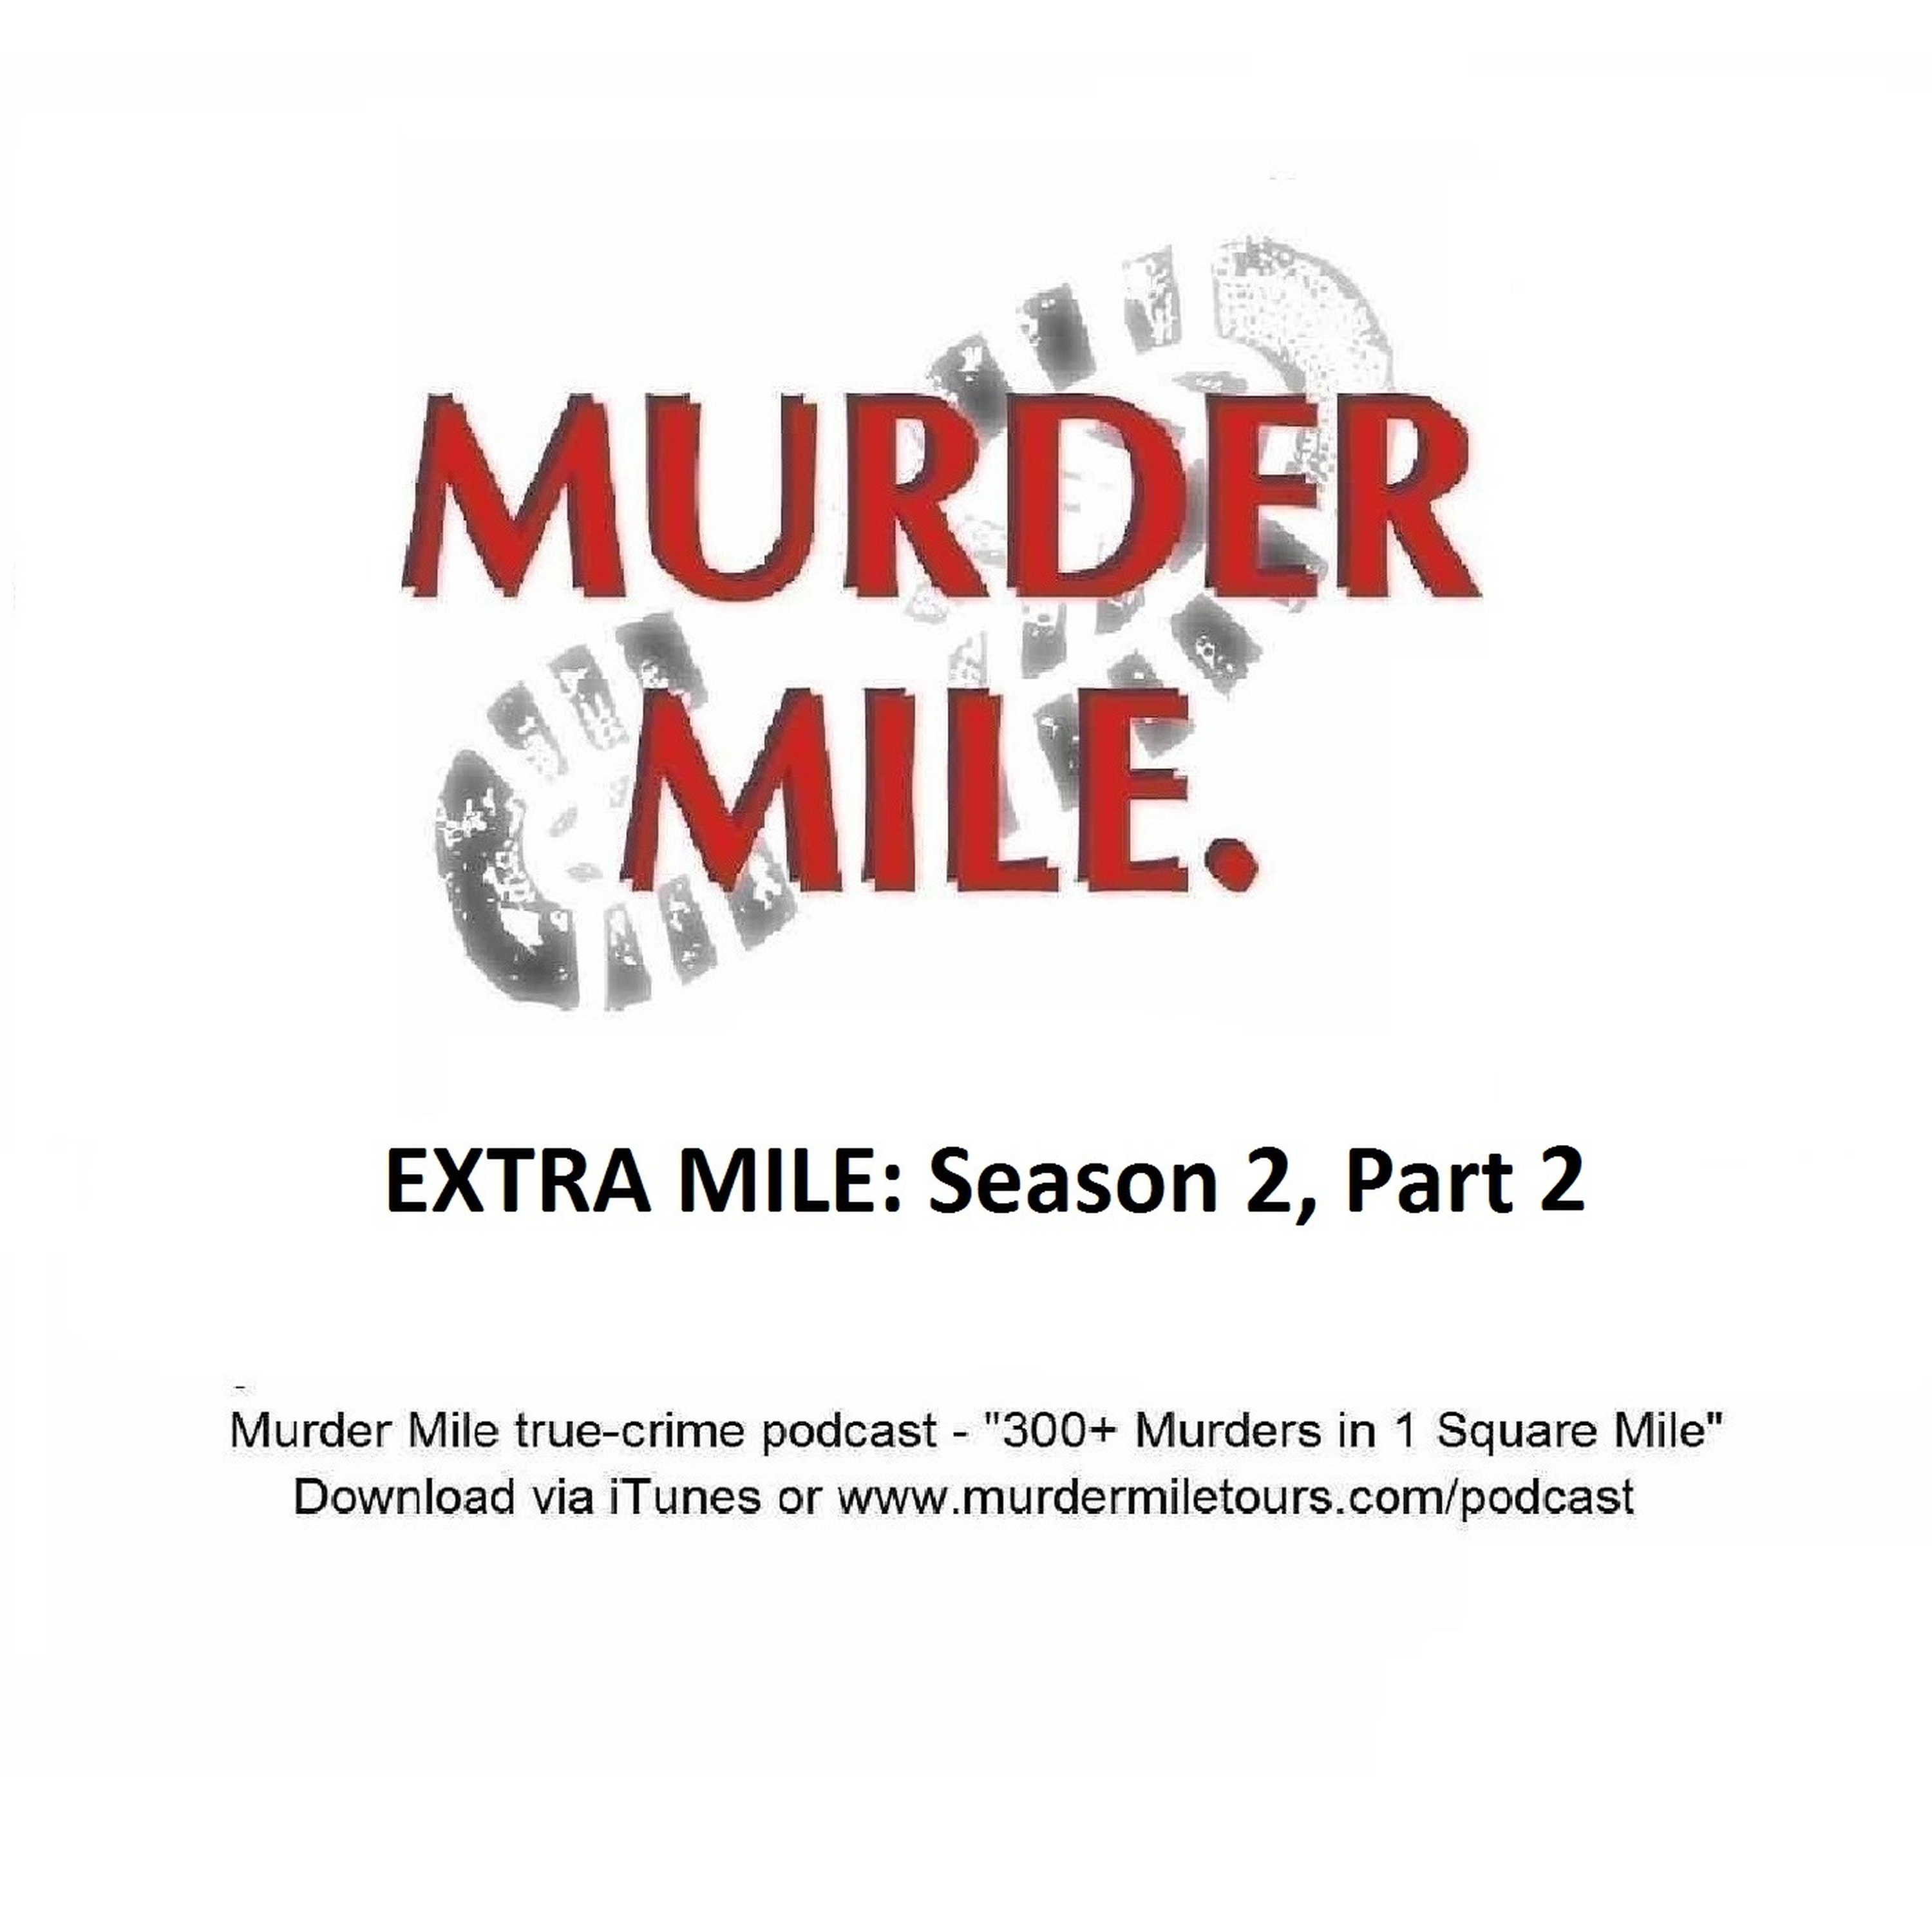 Extra Mile: Season 2, Part 2